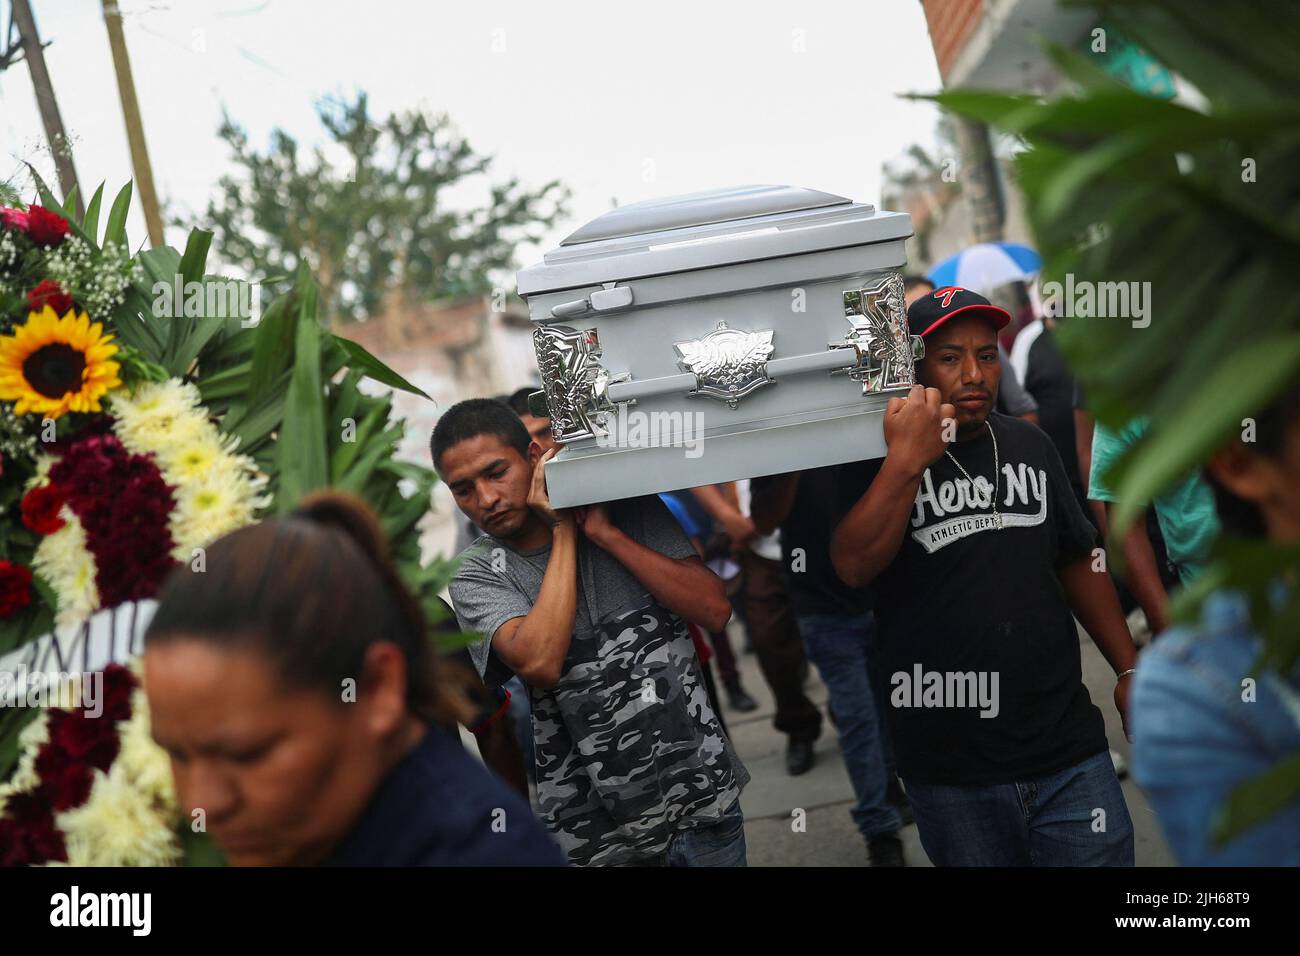 Familiares y amigos llevan el ataúd del difunto migrante José López, de 34 años, quien murió en un camión de remolque en Texas, mientras asistía a su funeral después de que sus restos fueran repatriados a México, en Celaya, estado de Guanajuato, México, el 15 de julio, 2022. REUTERS/Edgard Garrido Foto de stock